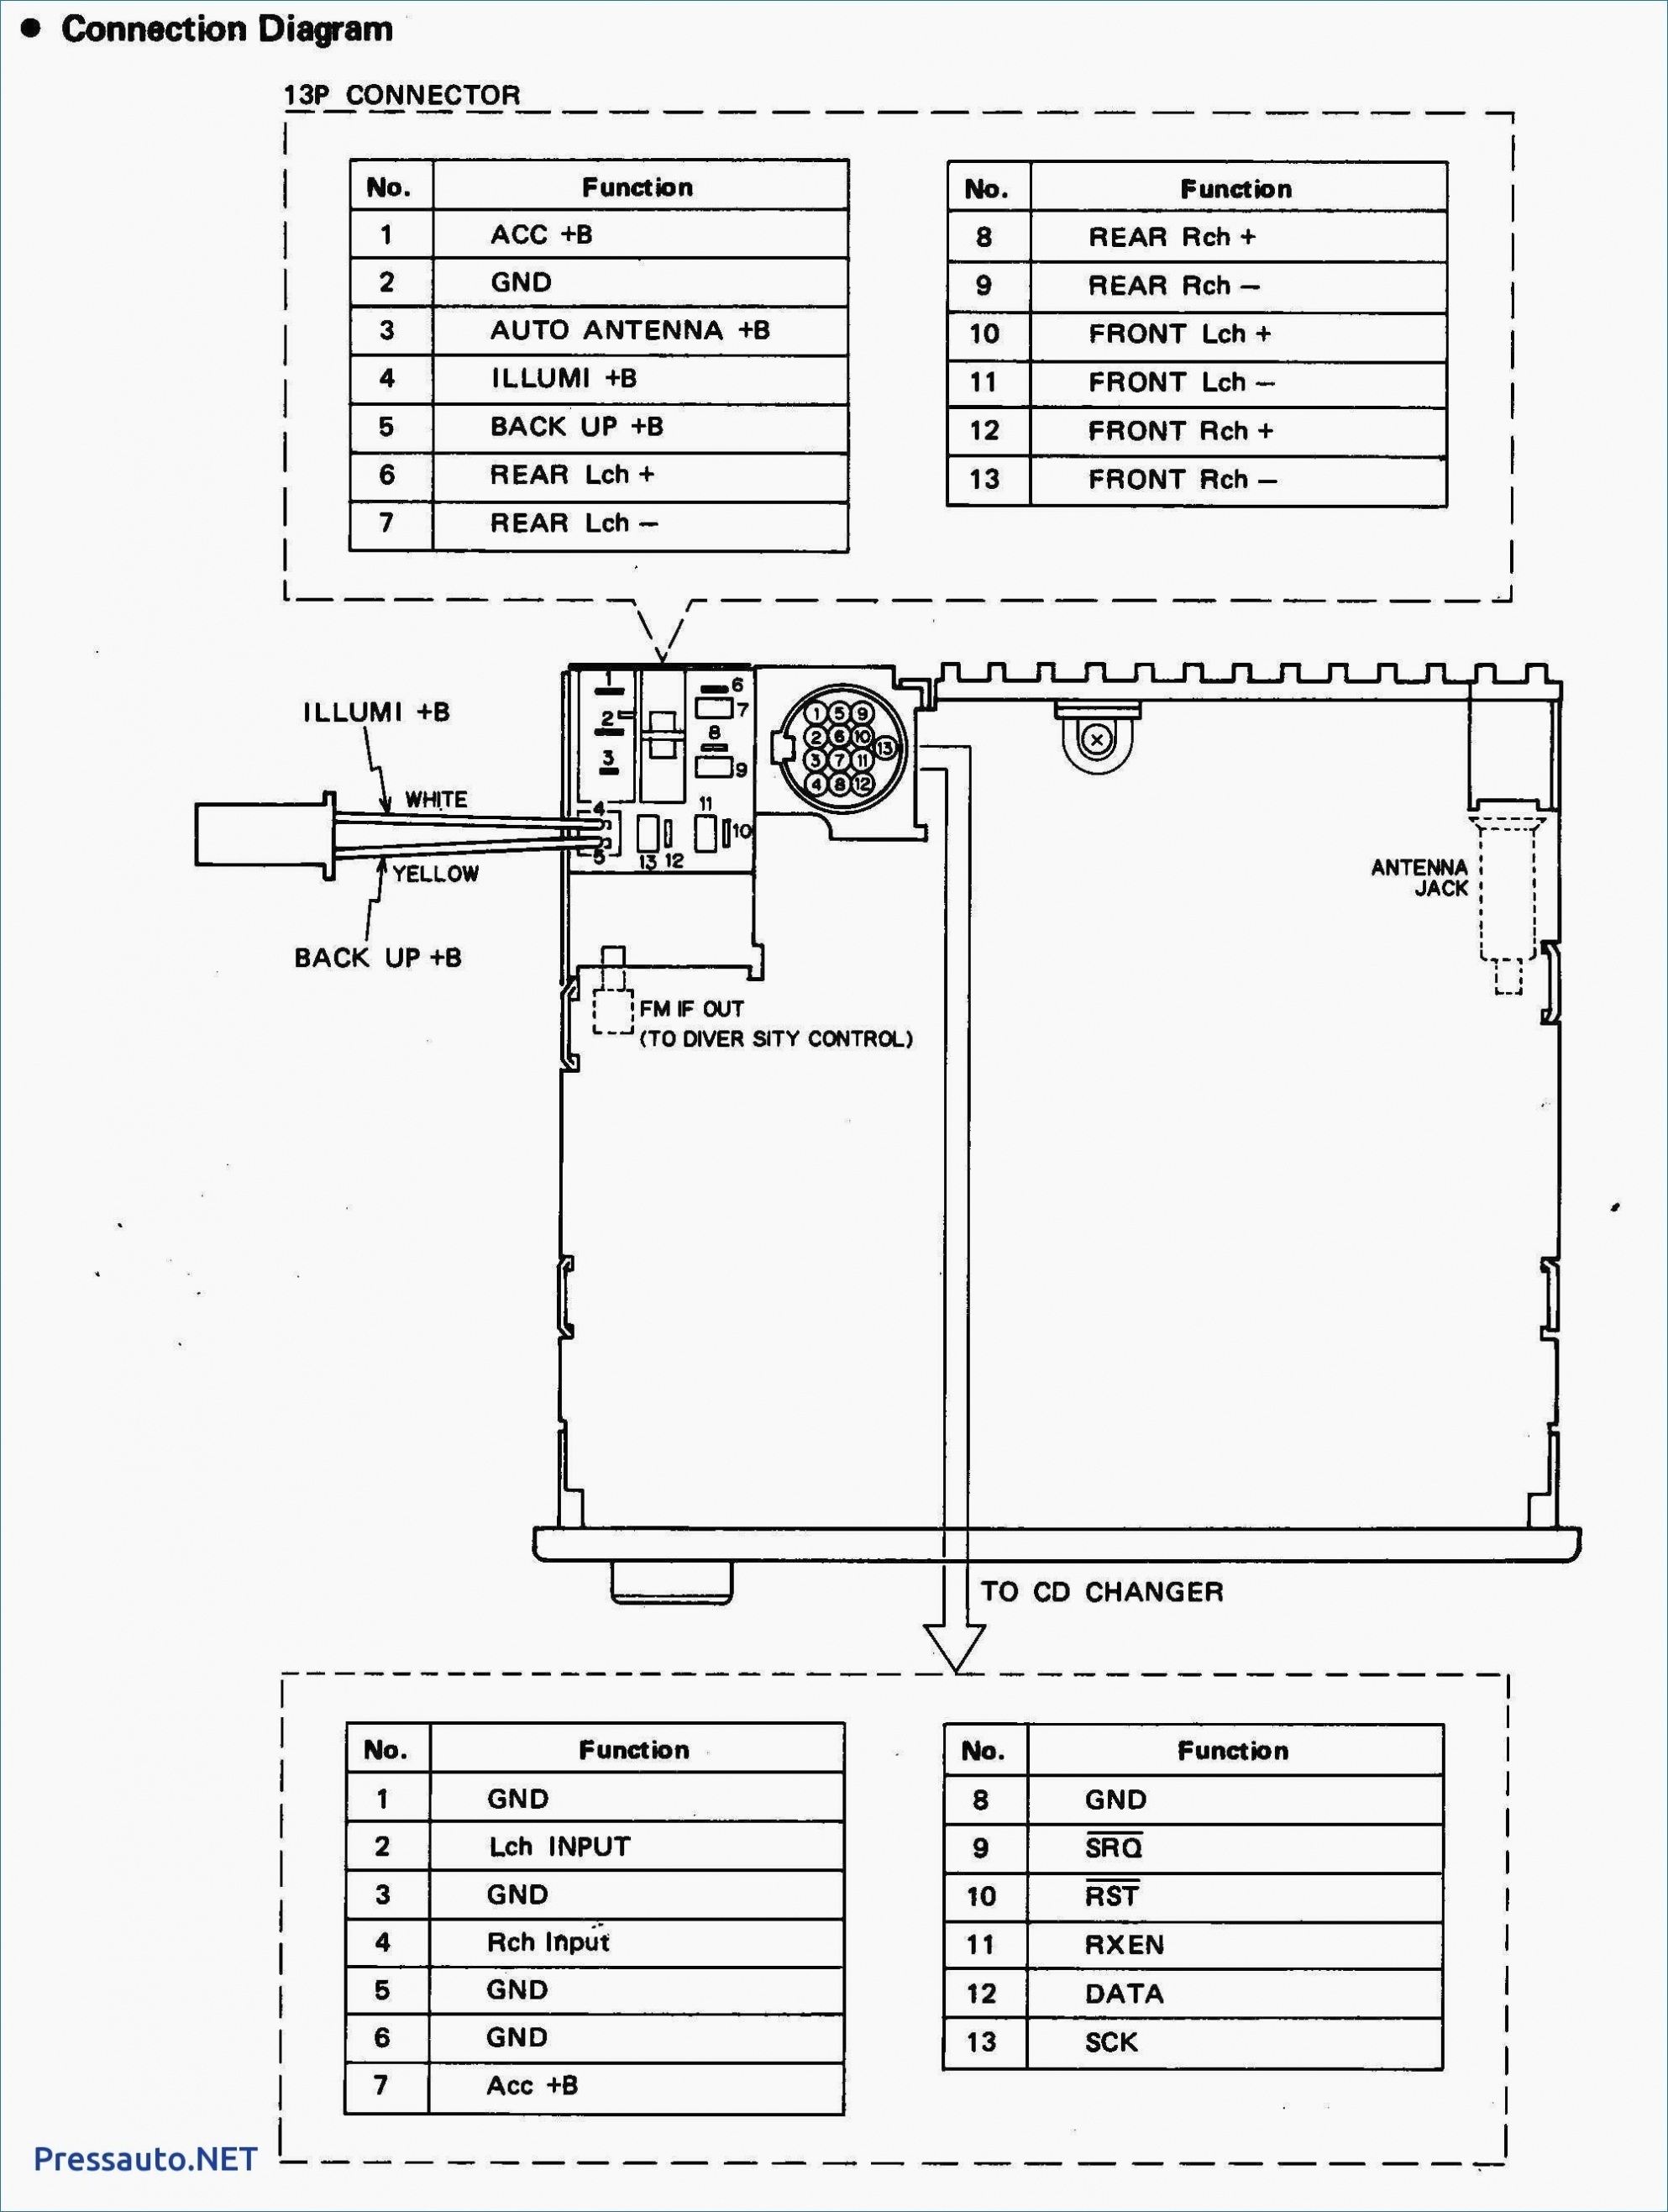 Wiring Diagram For Pioneer Best Pioneer Deh X1810Ub Wiring Diagram - Pioneer Deh-X1810Ub Wiring Diagram